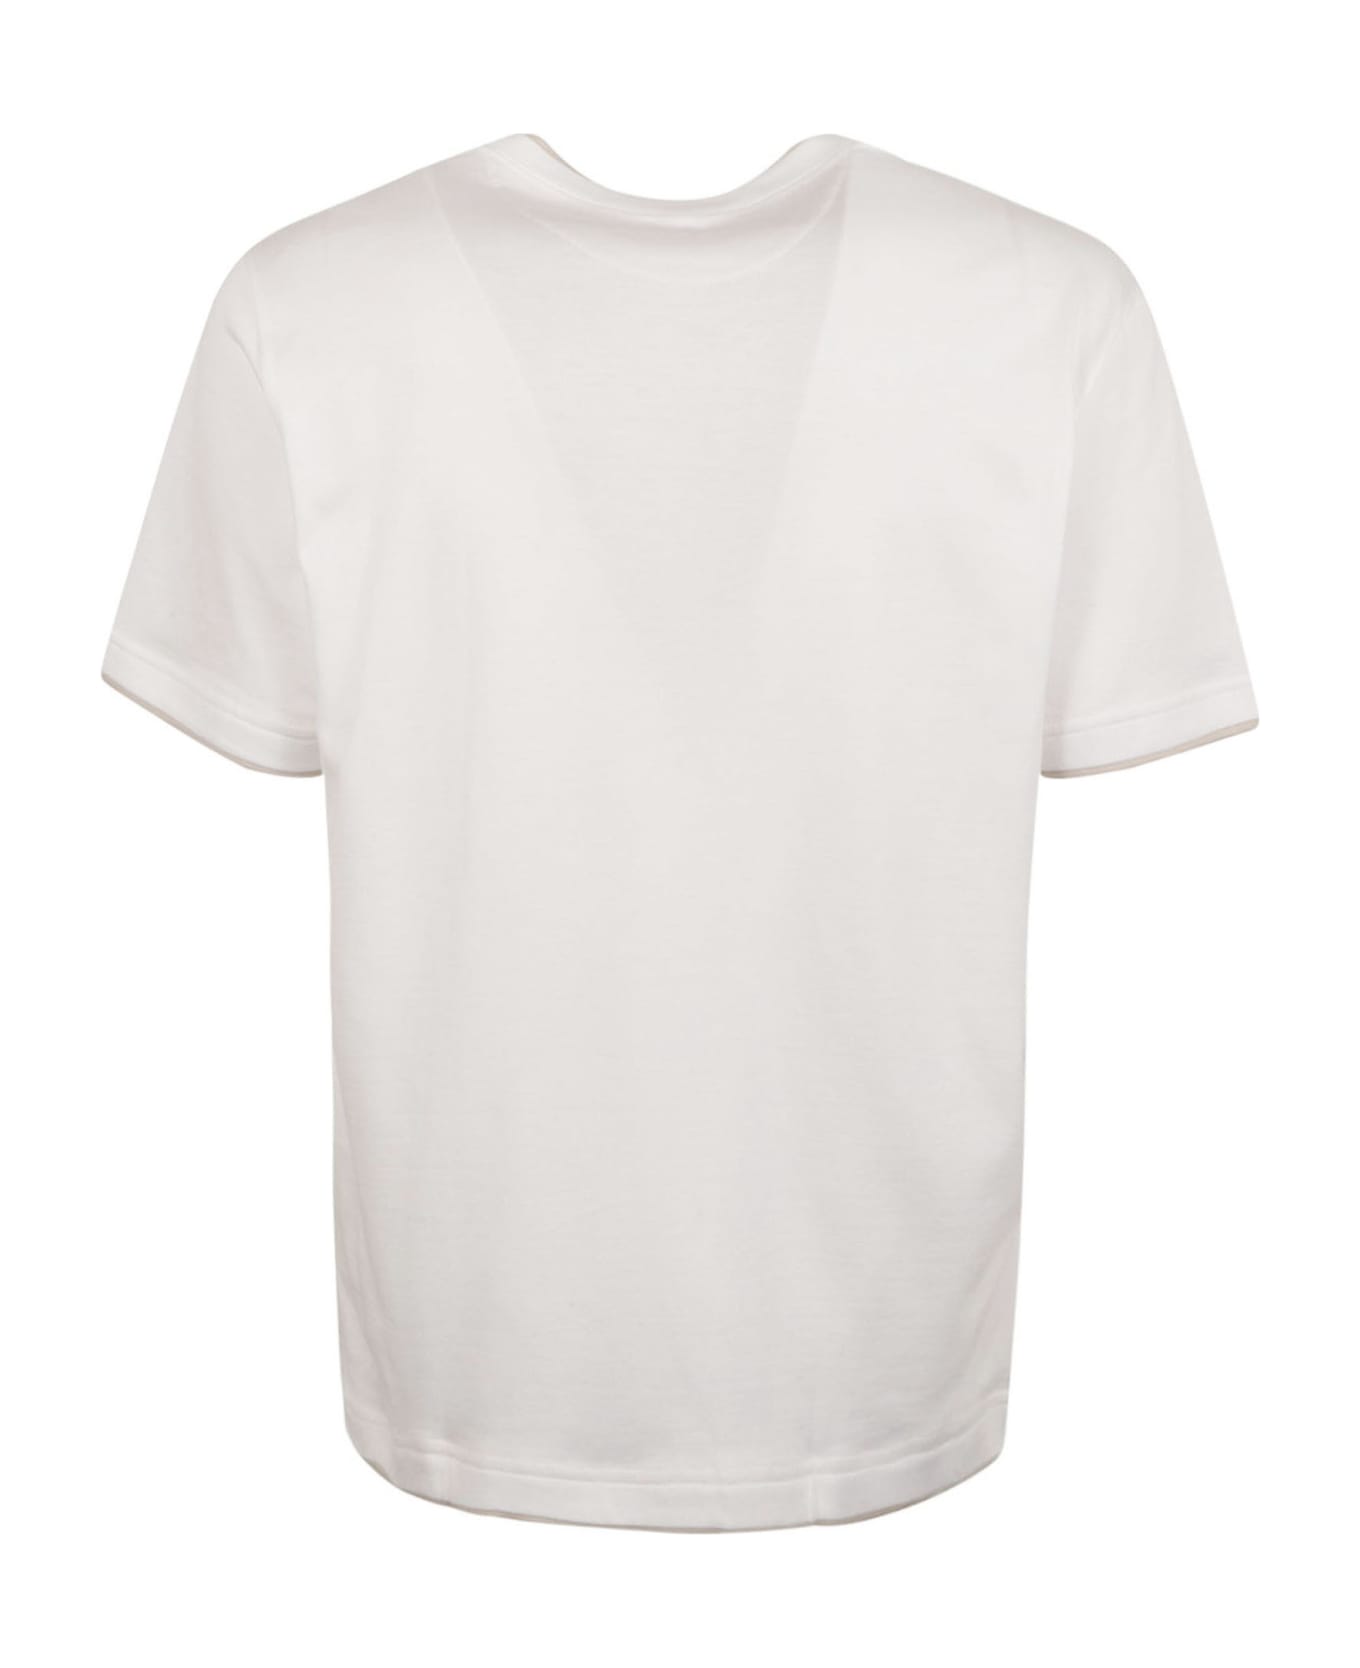 Eleventy Round Neck Plain T-shirt - White シャツ